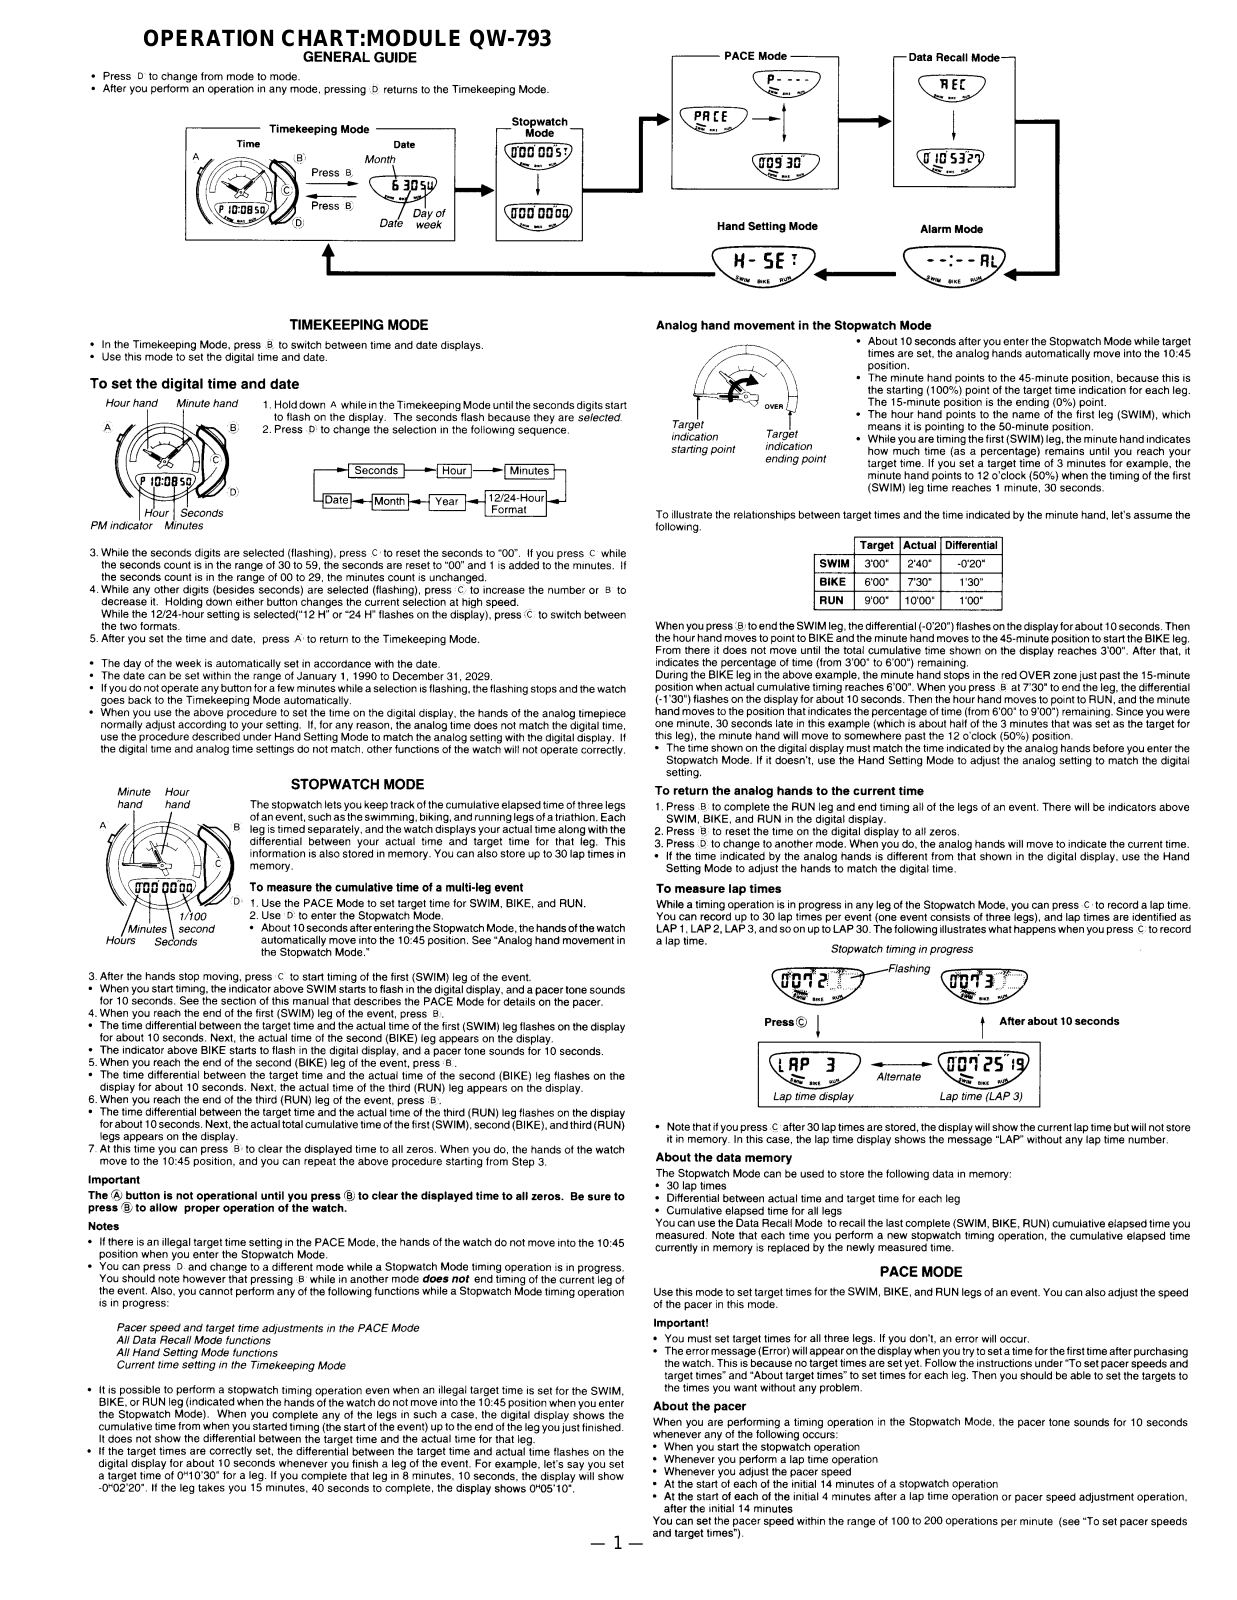 Casio 793 Owner's Manual